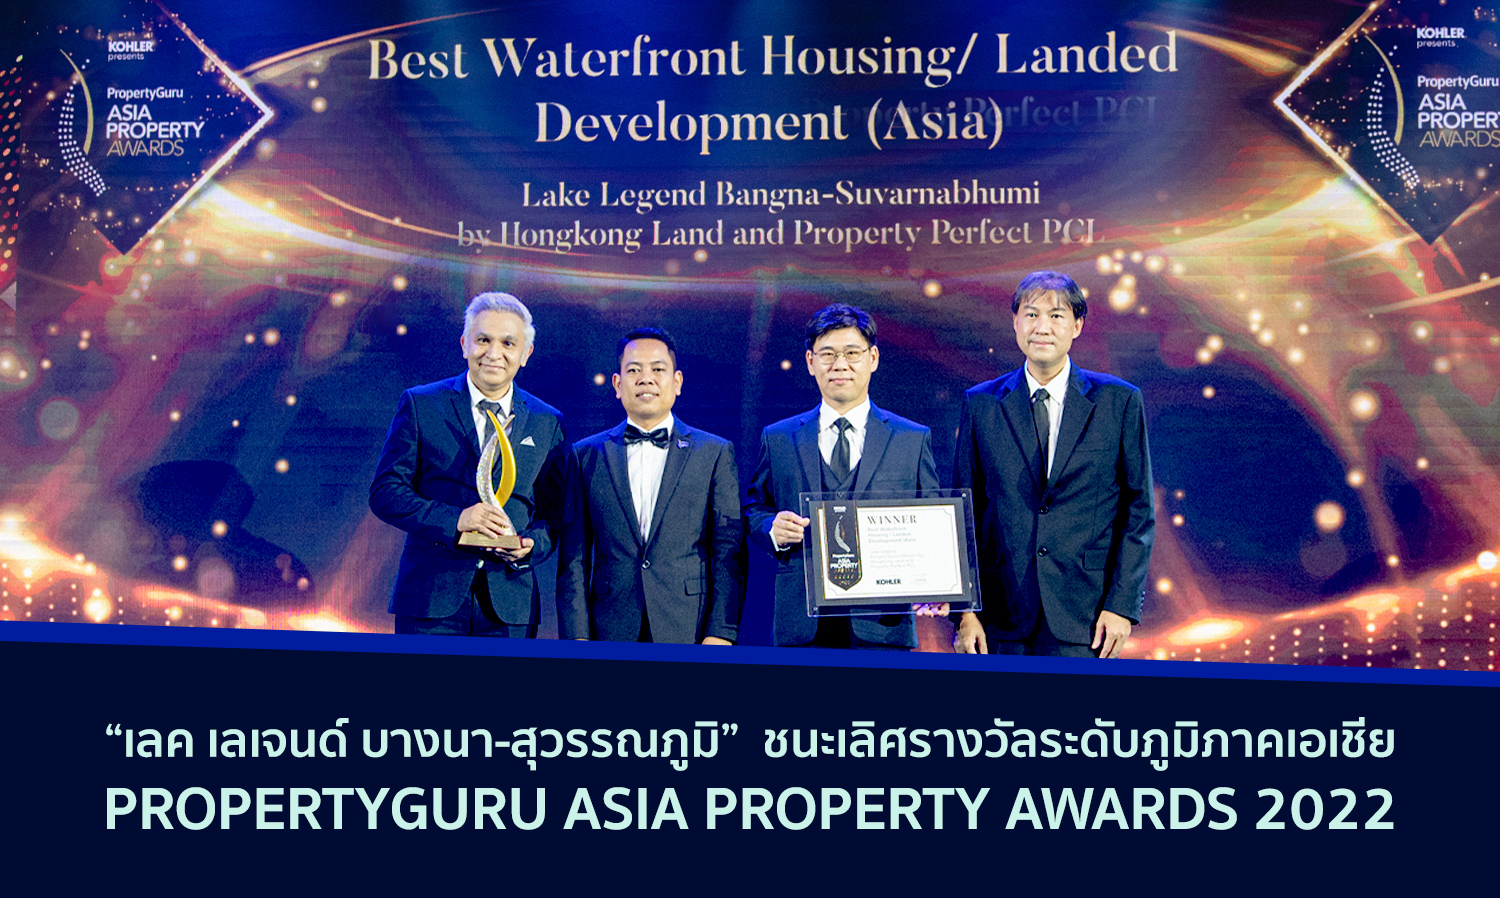 เลค เลเจนด์ บางนา-สุวรรณภูมิ ชนะเลิศรางวัลระดับภูมิภาคเอเชีย PropertyGuru Asia Property Awards 2022